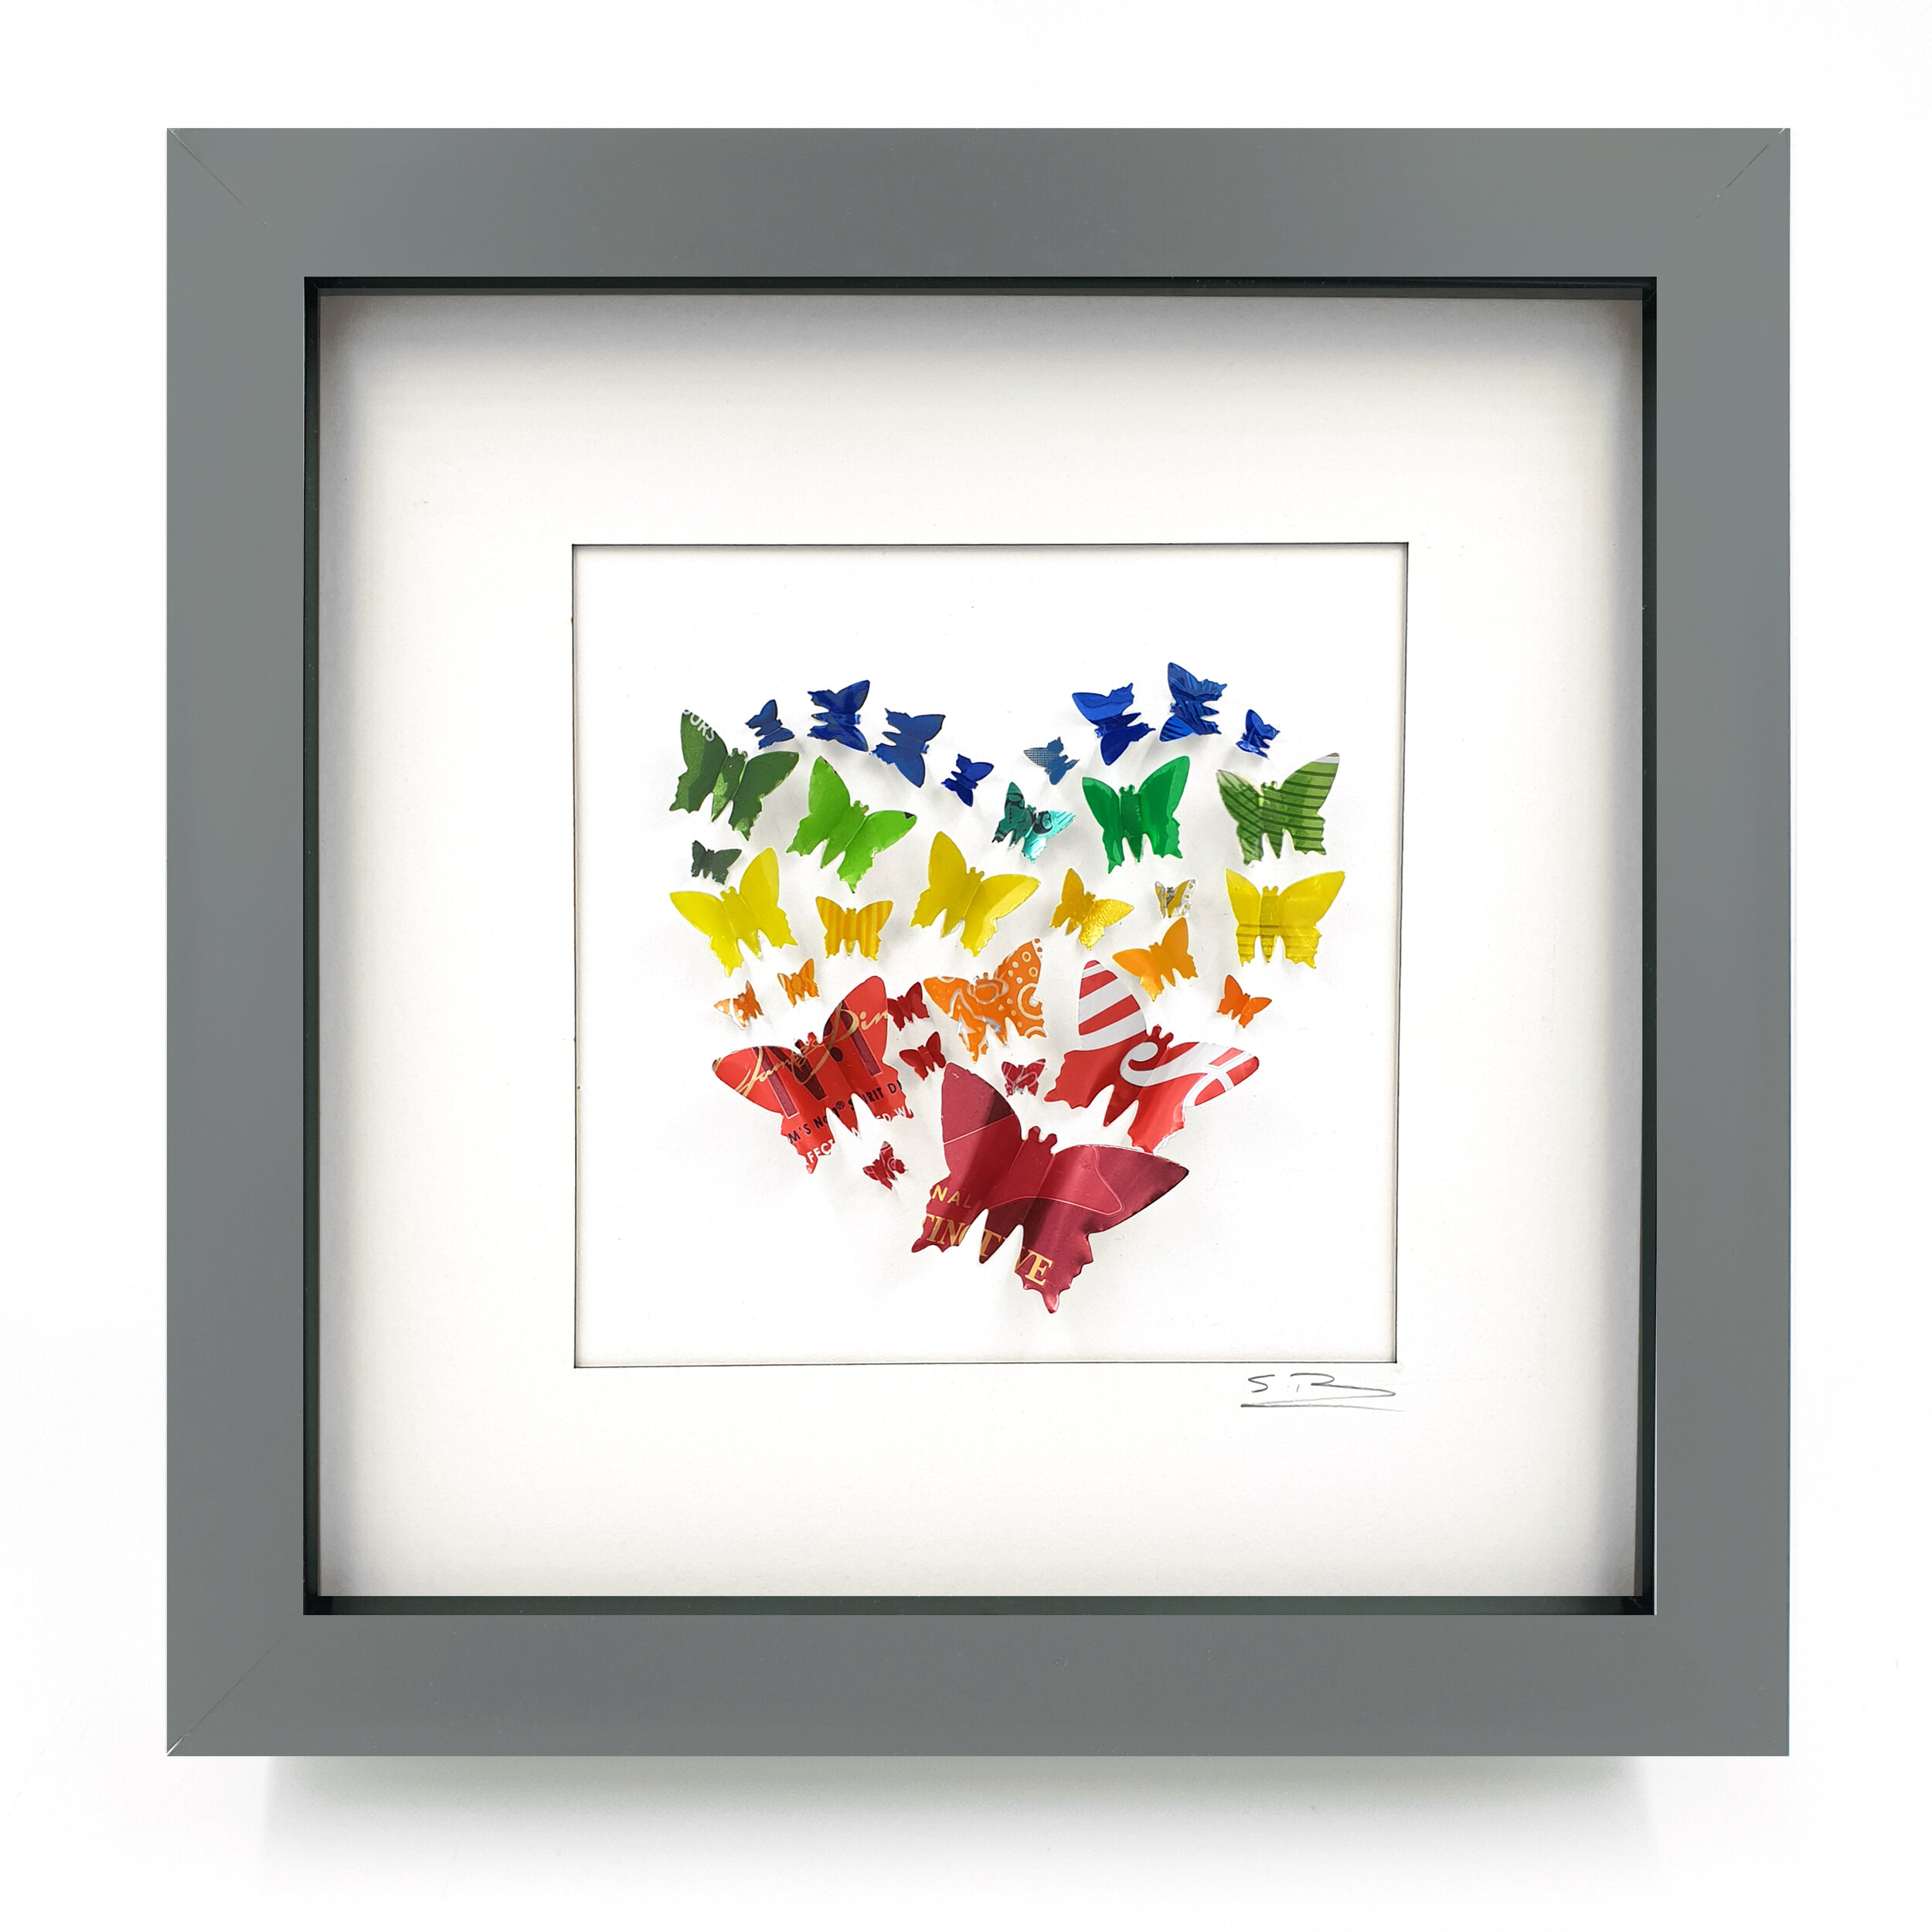 Rainbow Butterfly Heart tin can framed art grey frame 